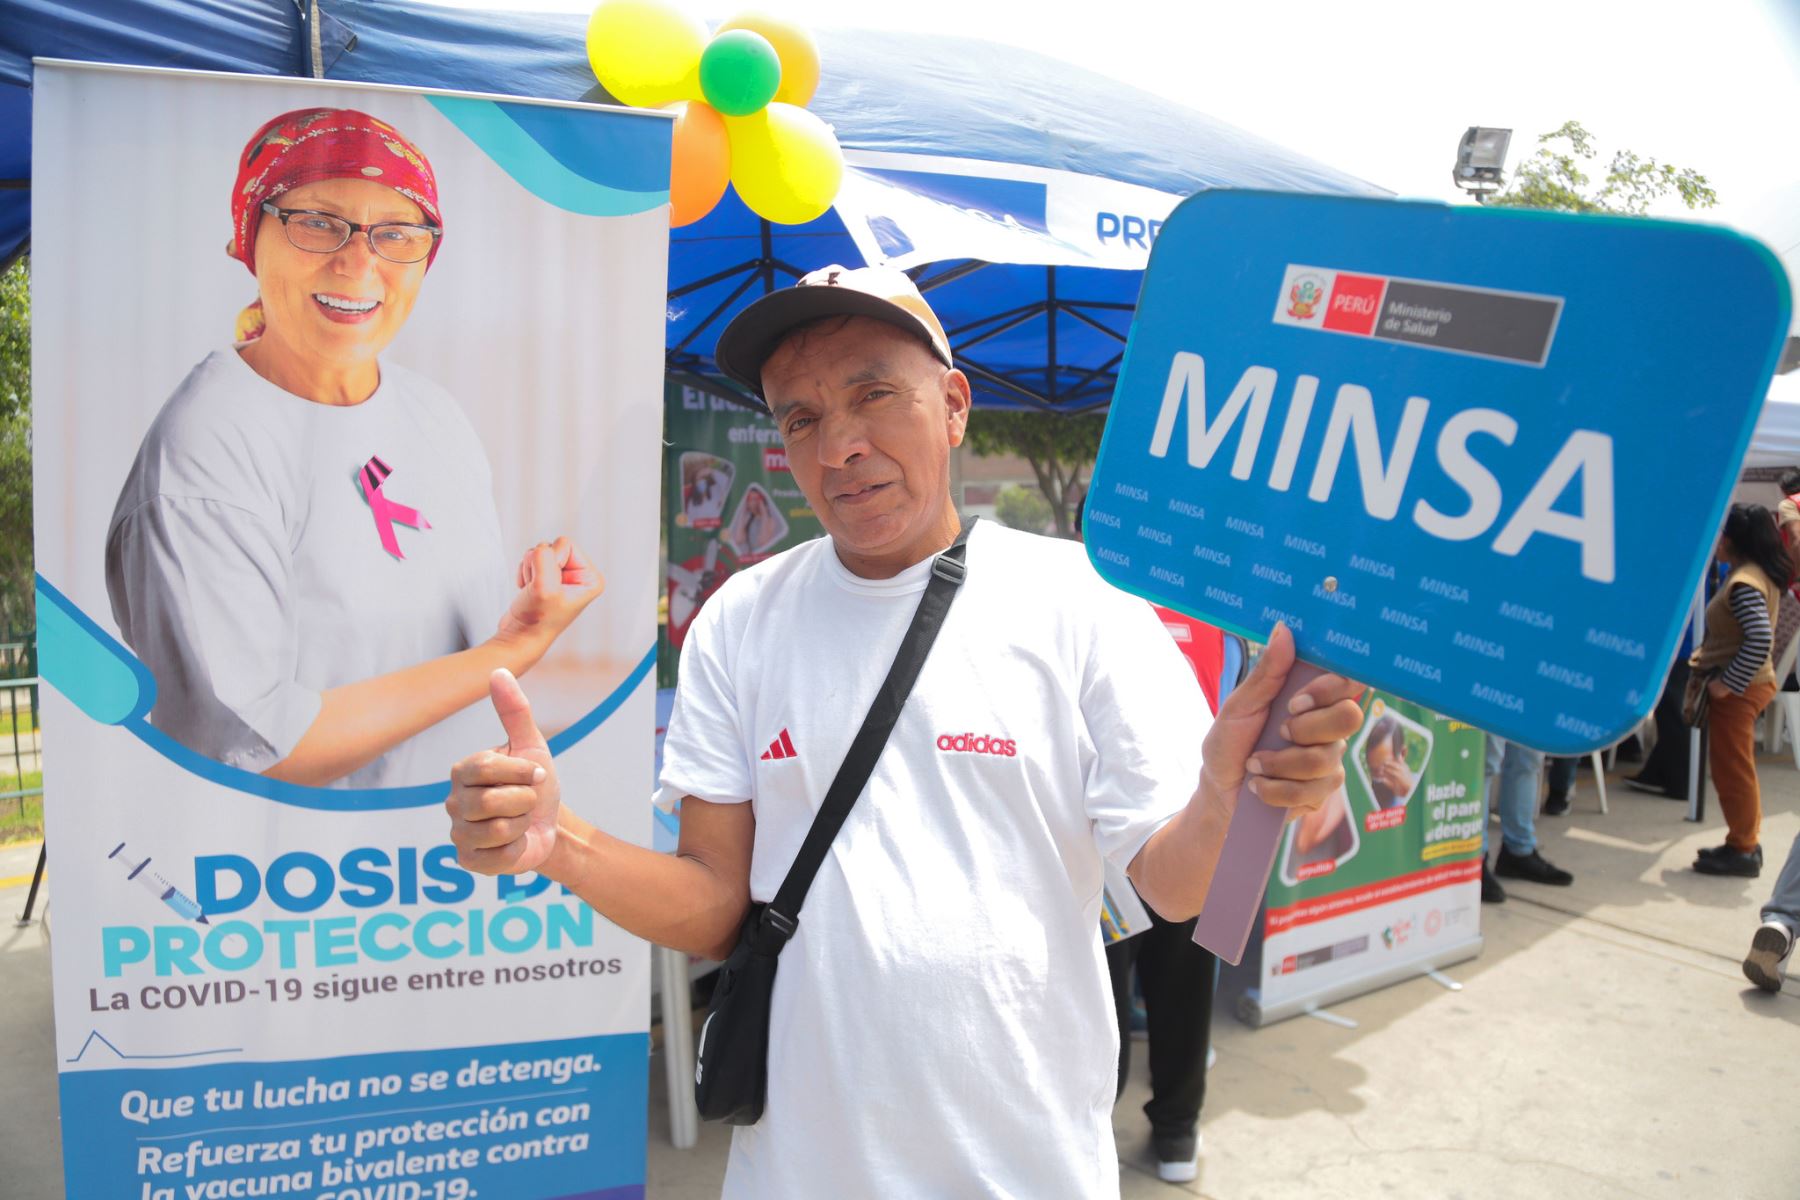 Ministerio de Salud promueve campaña integral  de salud dirigida a la población en general , con énfasis en adultos mayores en Huaycán. Se brindaron los servicios de vacunación contra la covid-19 y esquema regular, descarte de cáncer de piel, colon, VIH, prevención de dengue, entre otros
Foto: Minsa